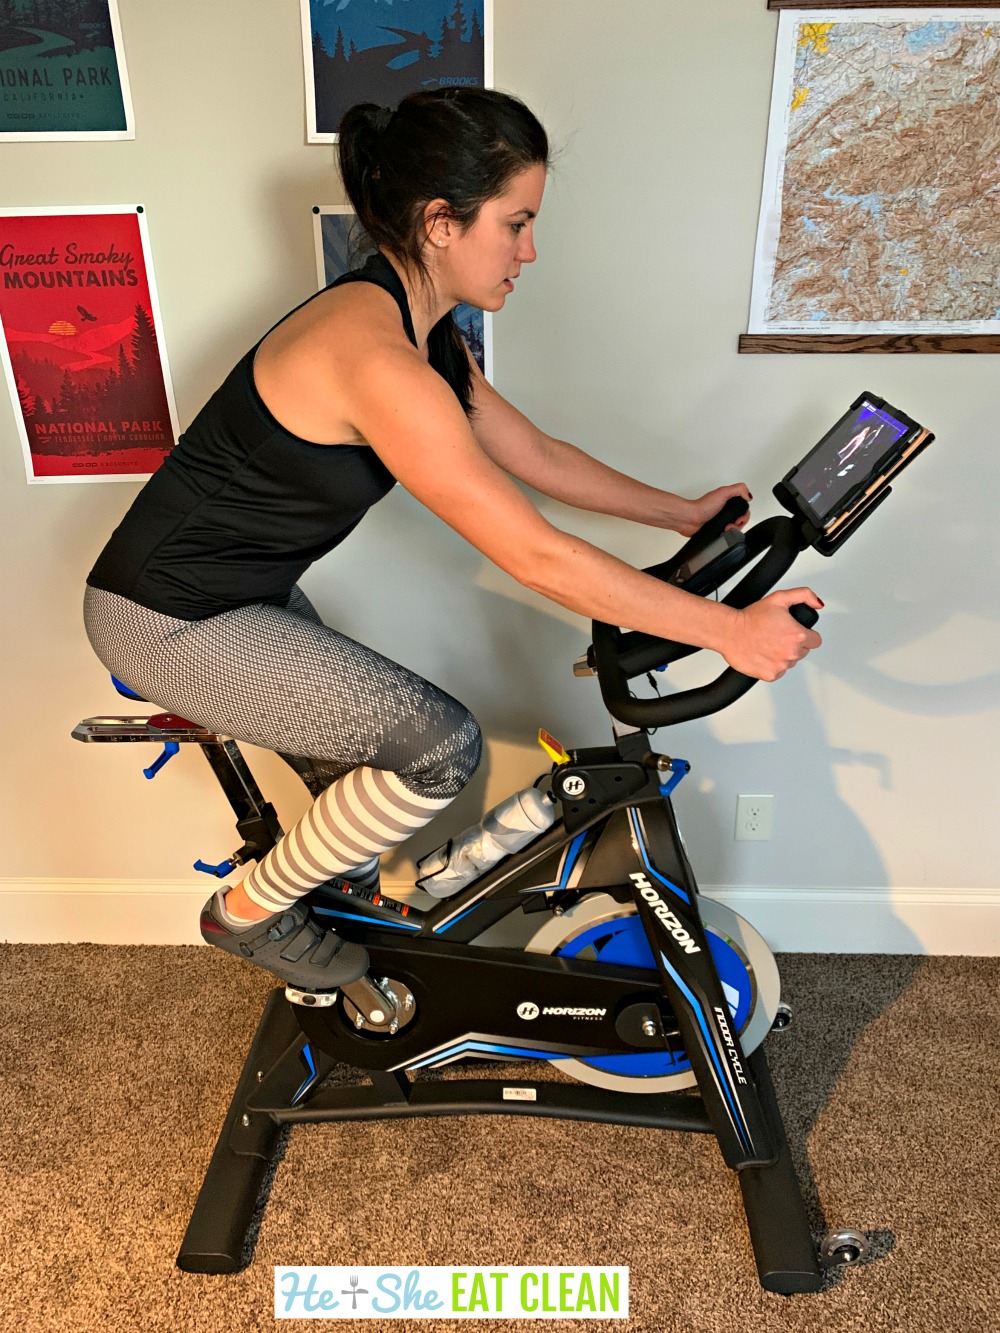 female using the Horizon Fitness indoor spinning bike